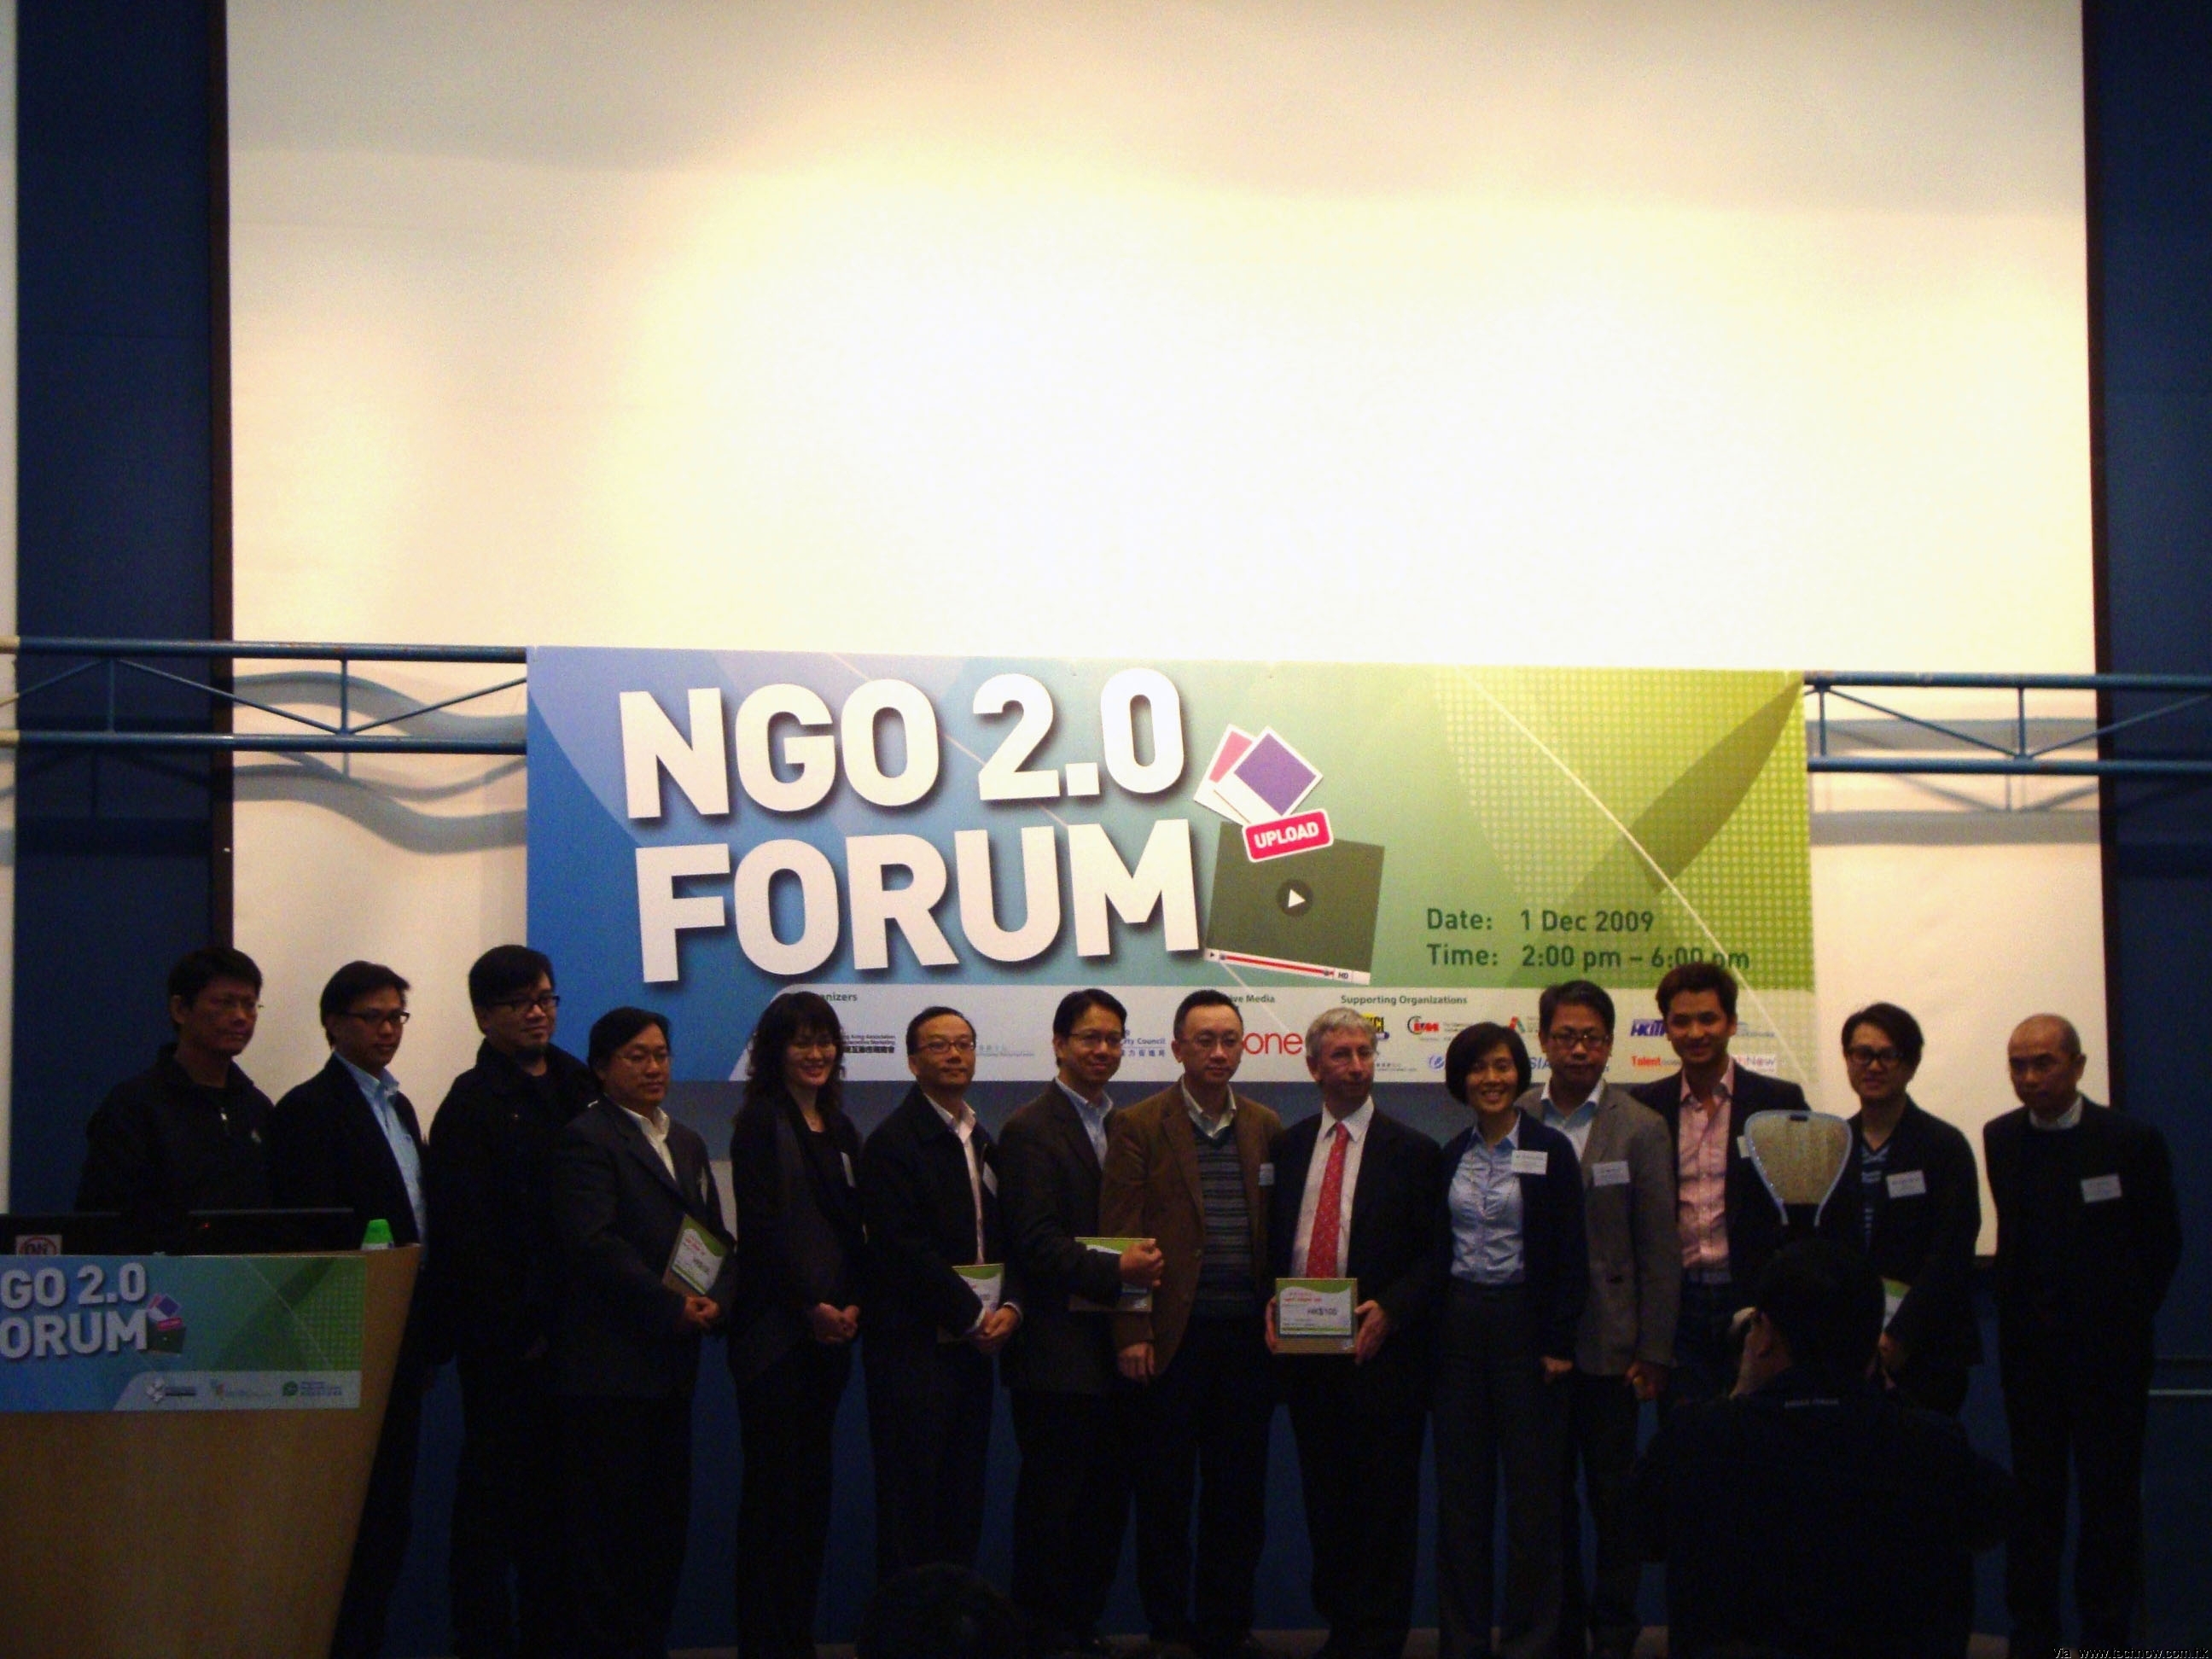 NGO 2.0 Forum